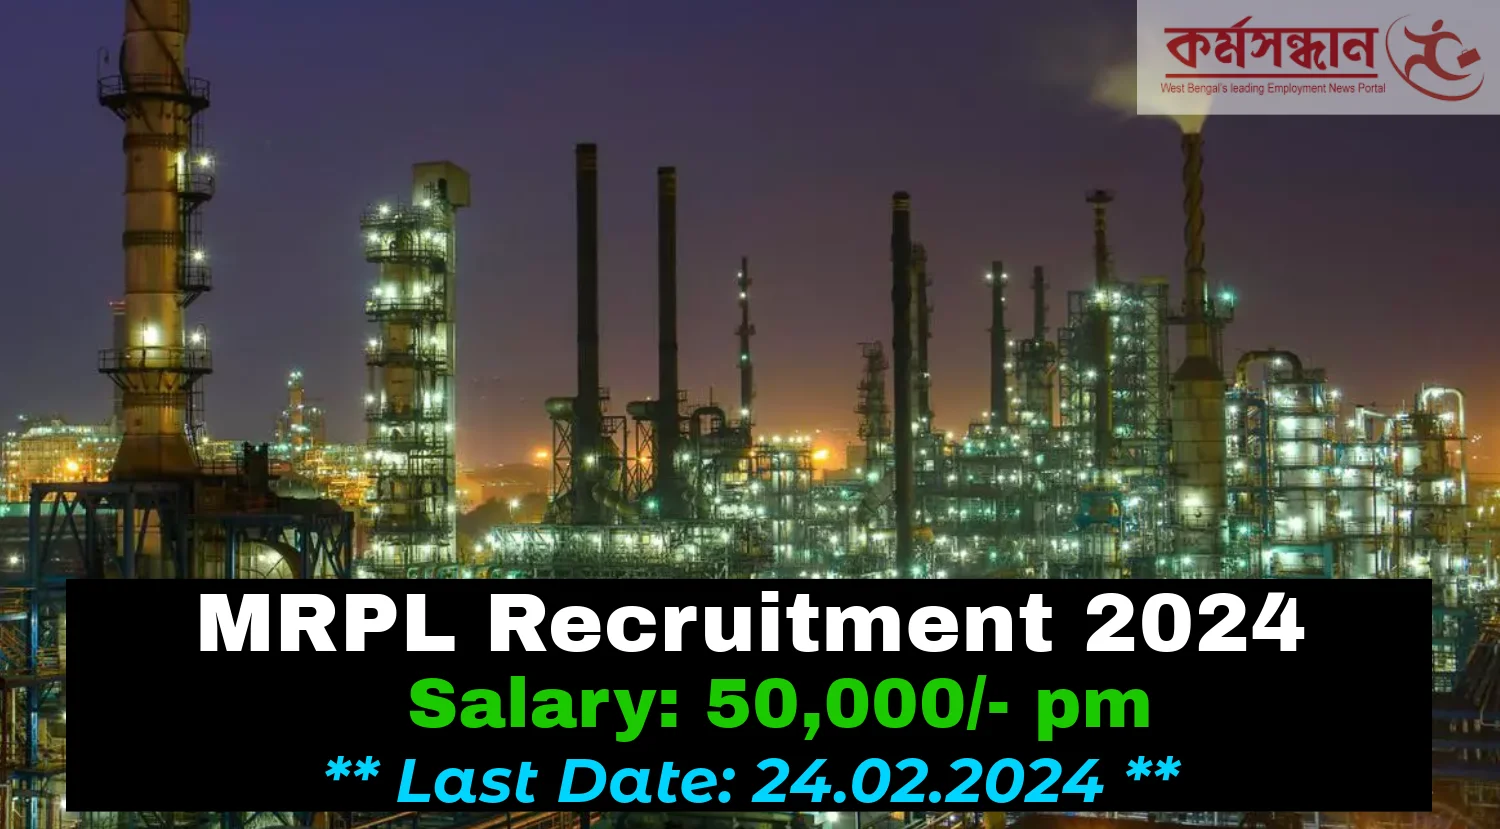 MRPL Recruitment 2024